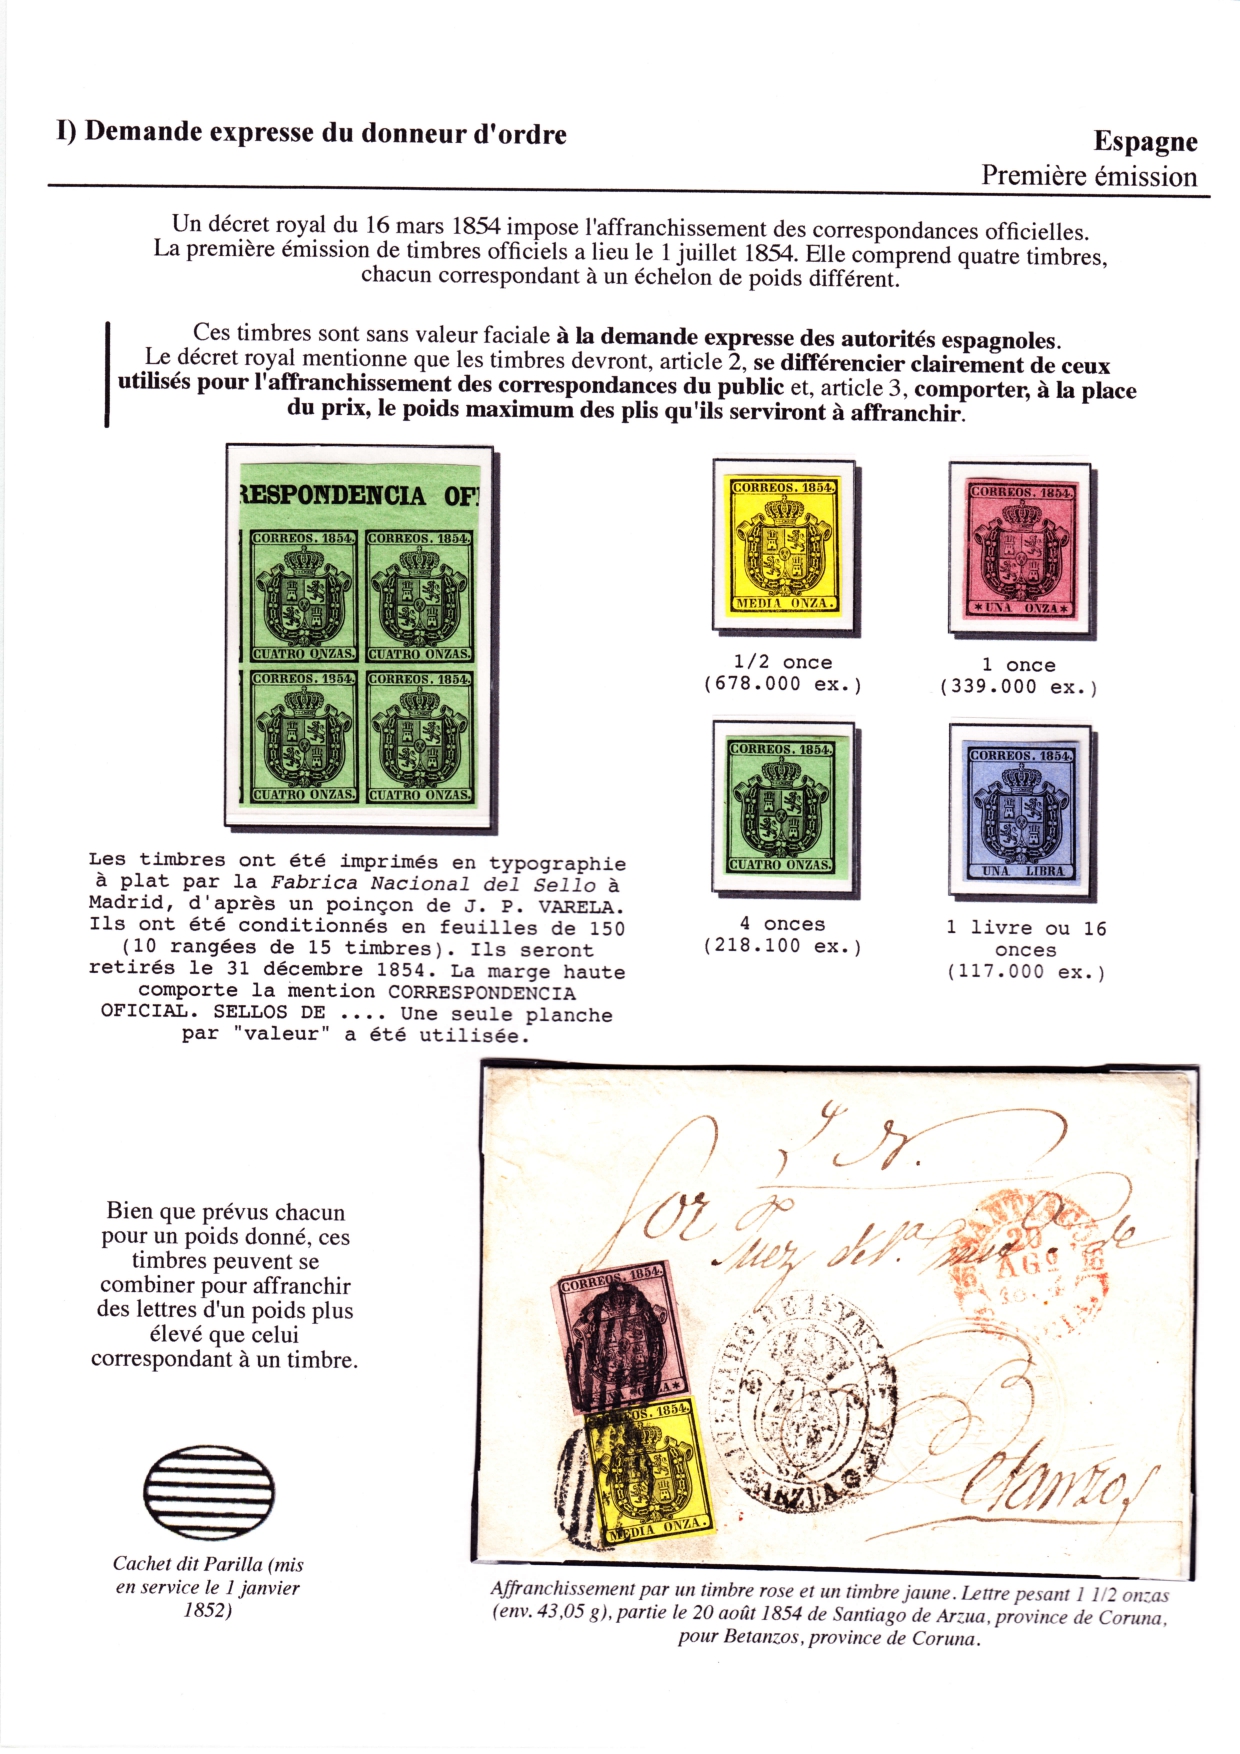 Les d������buts des timbres sans valeur faciale apparente p. 2